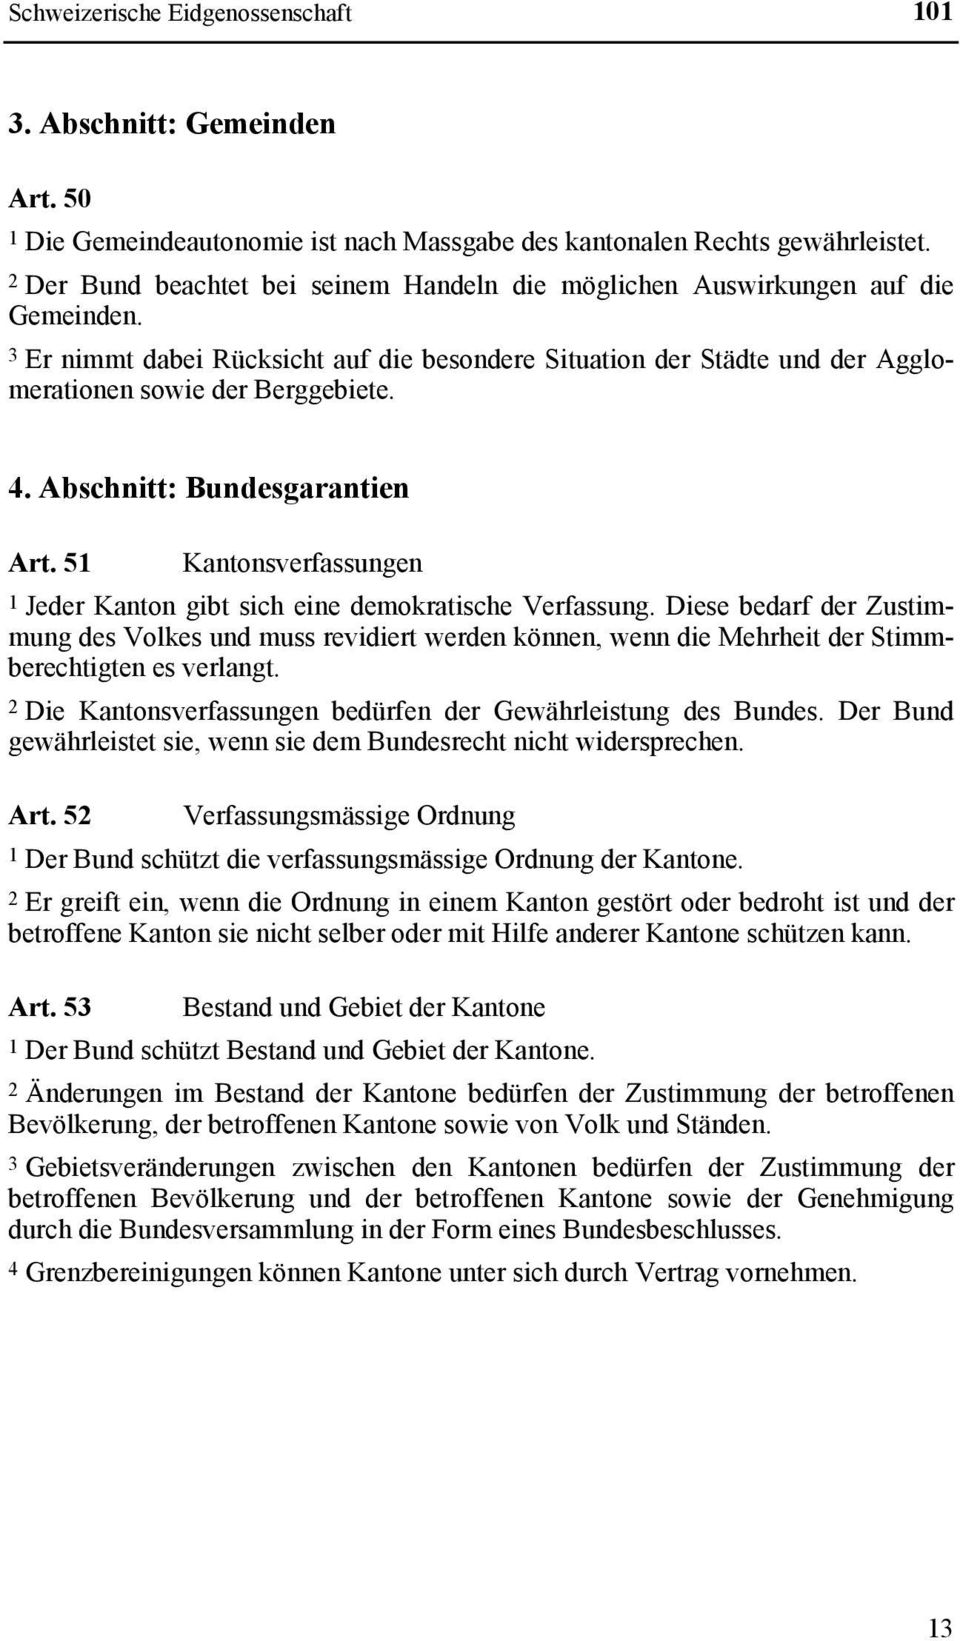 Abschnitt: Bundesgarantien Art. 51 Kantonsverfassungen 1 Jeder Kanton gibt sich eine demokratische Verfassung.